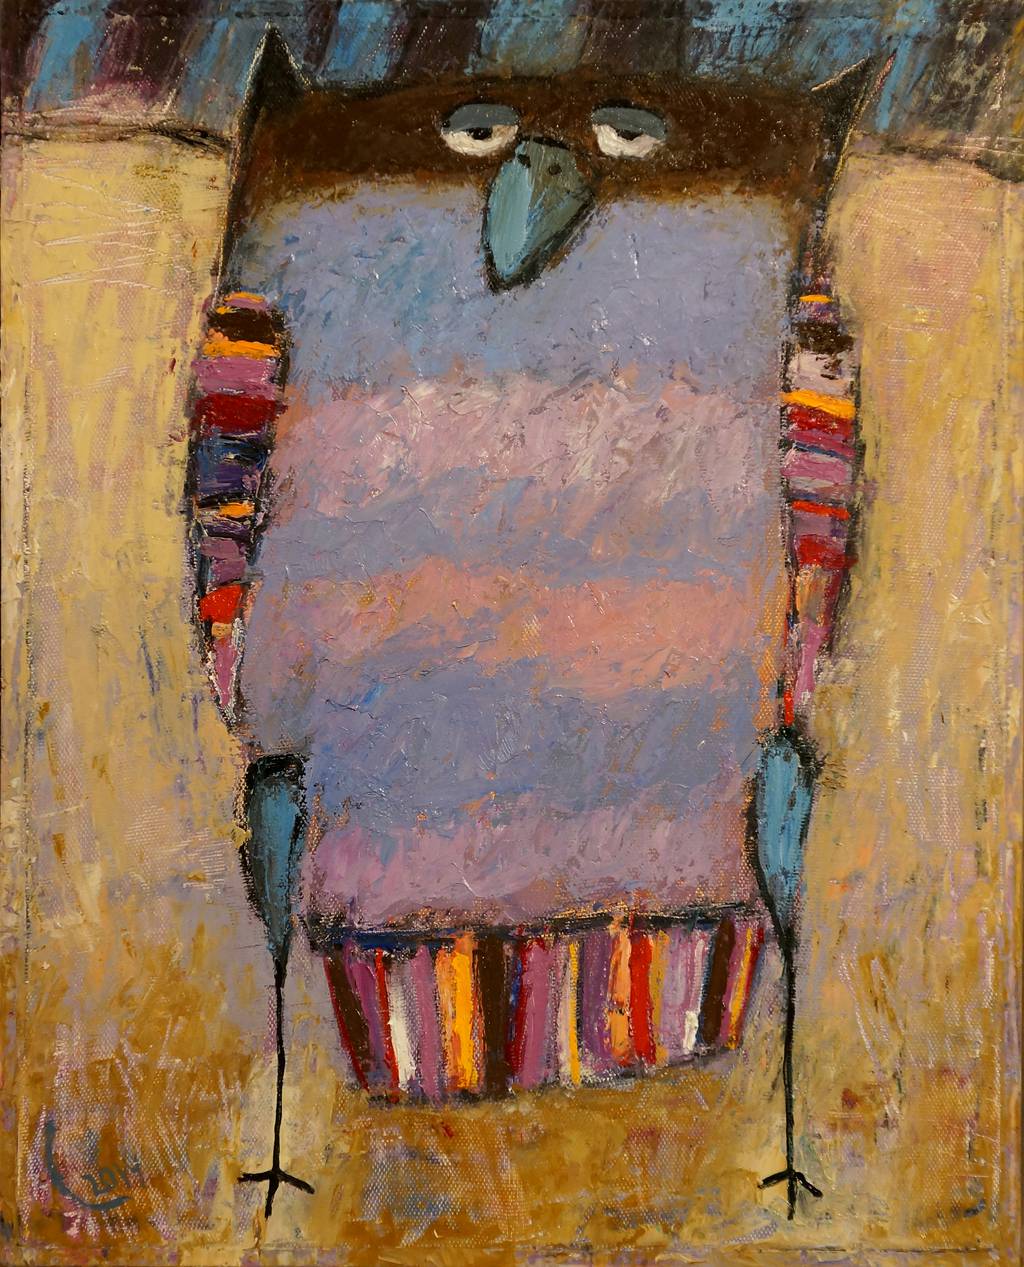 Owl, 52x42cm., oil on canvas, 2014